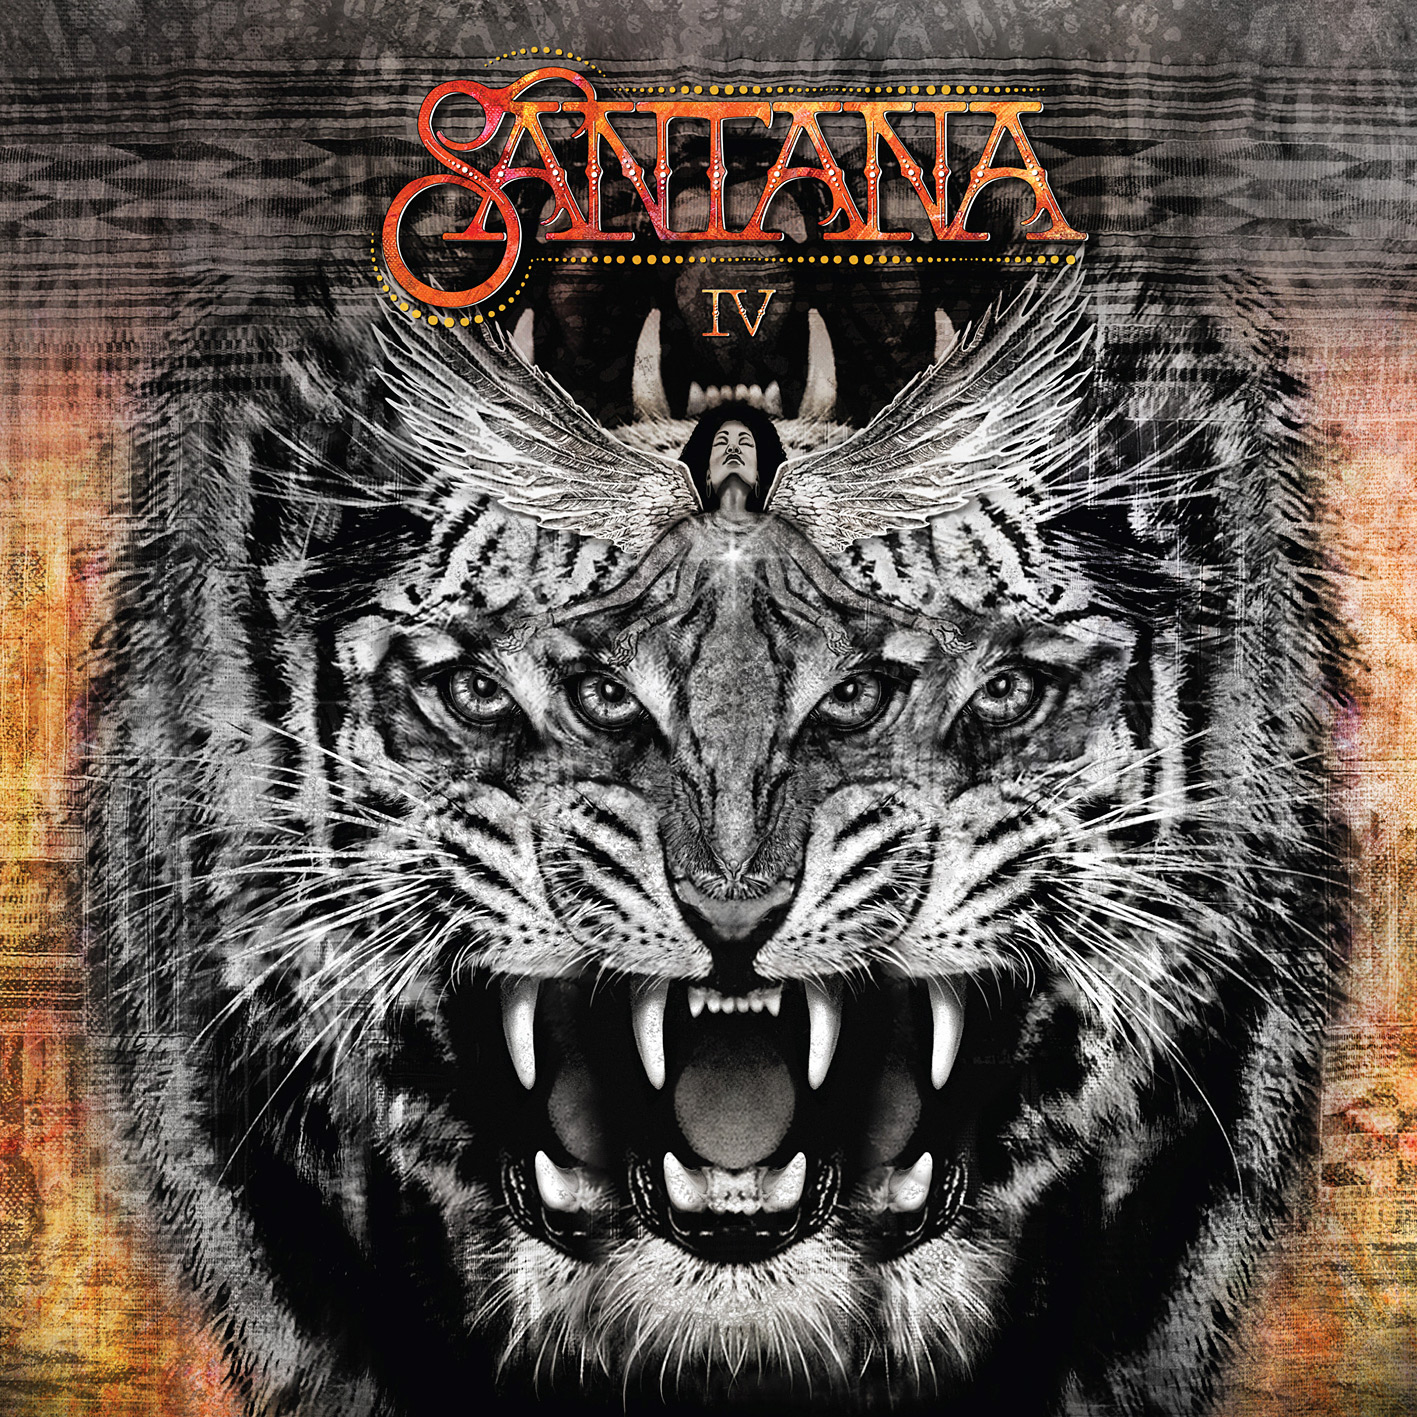 Santana - Santana IV (2016) [HDTracks FLAC 24bit/48kHz]